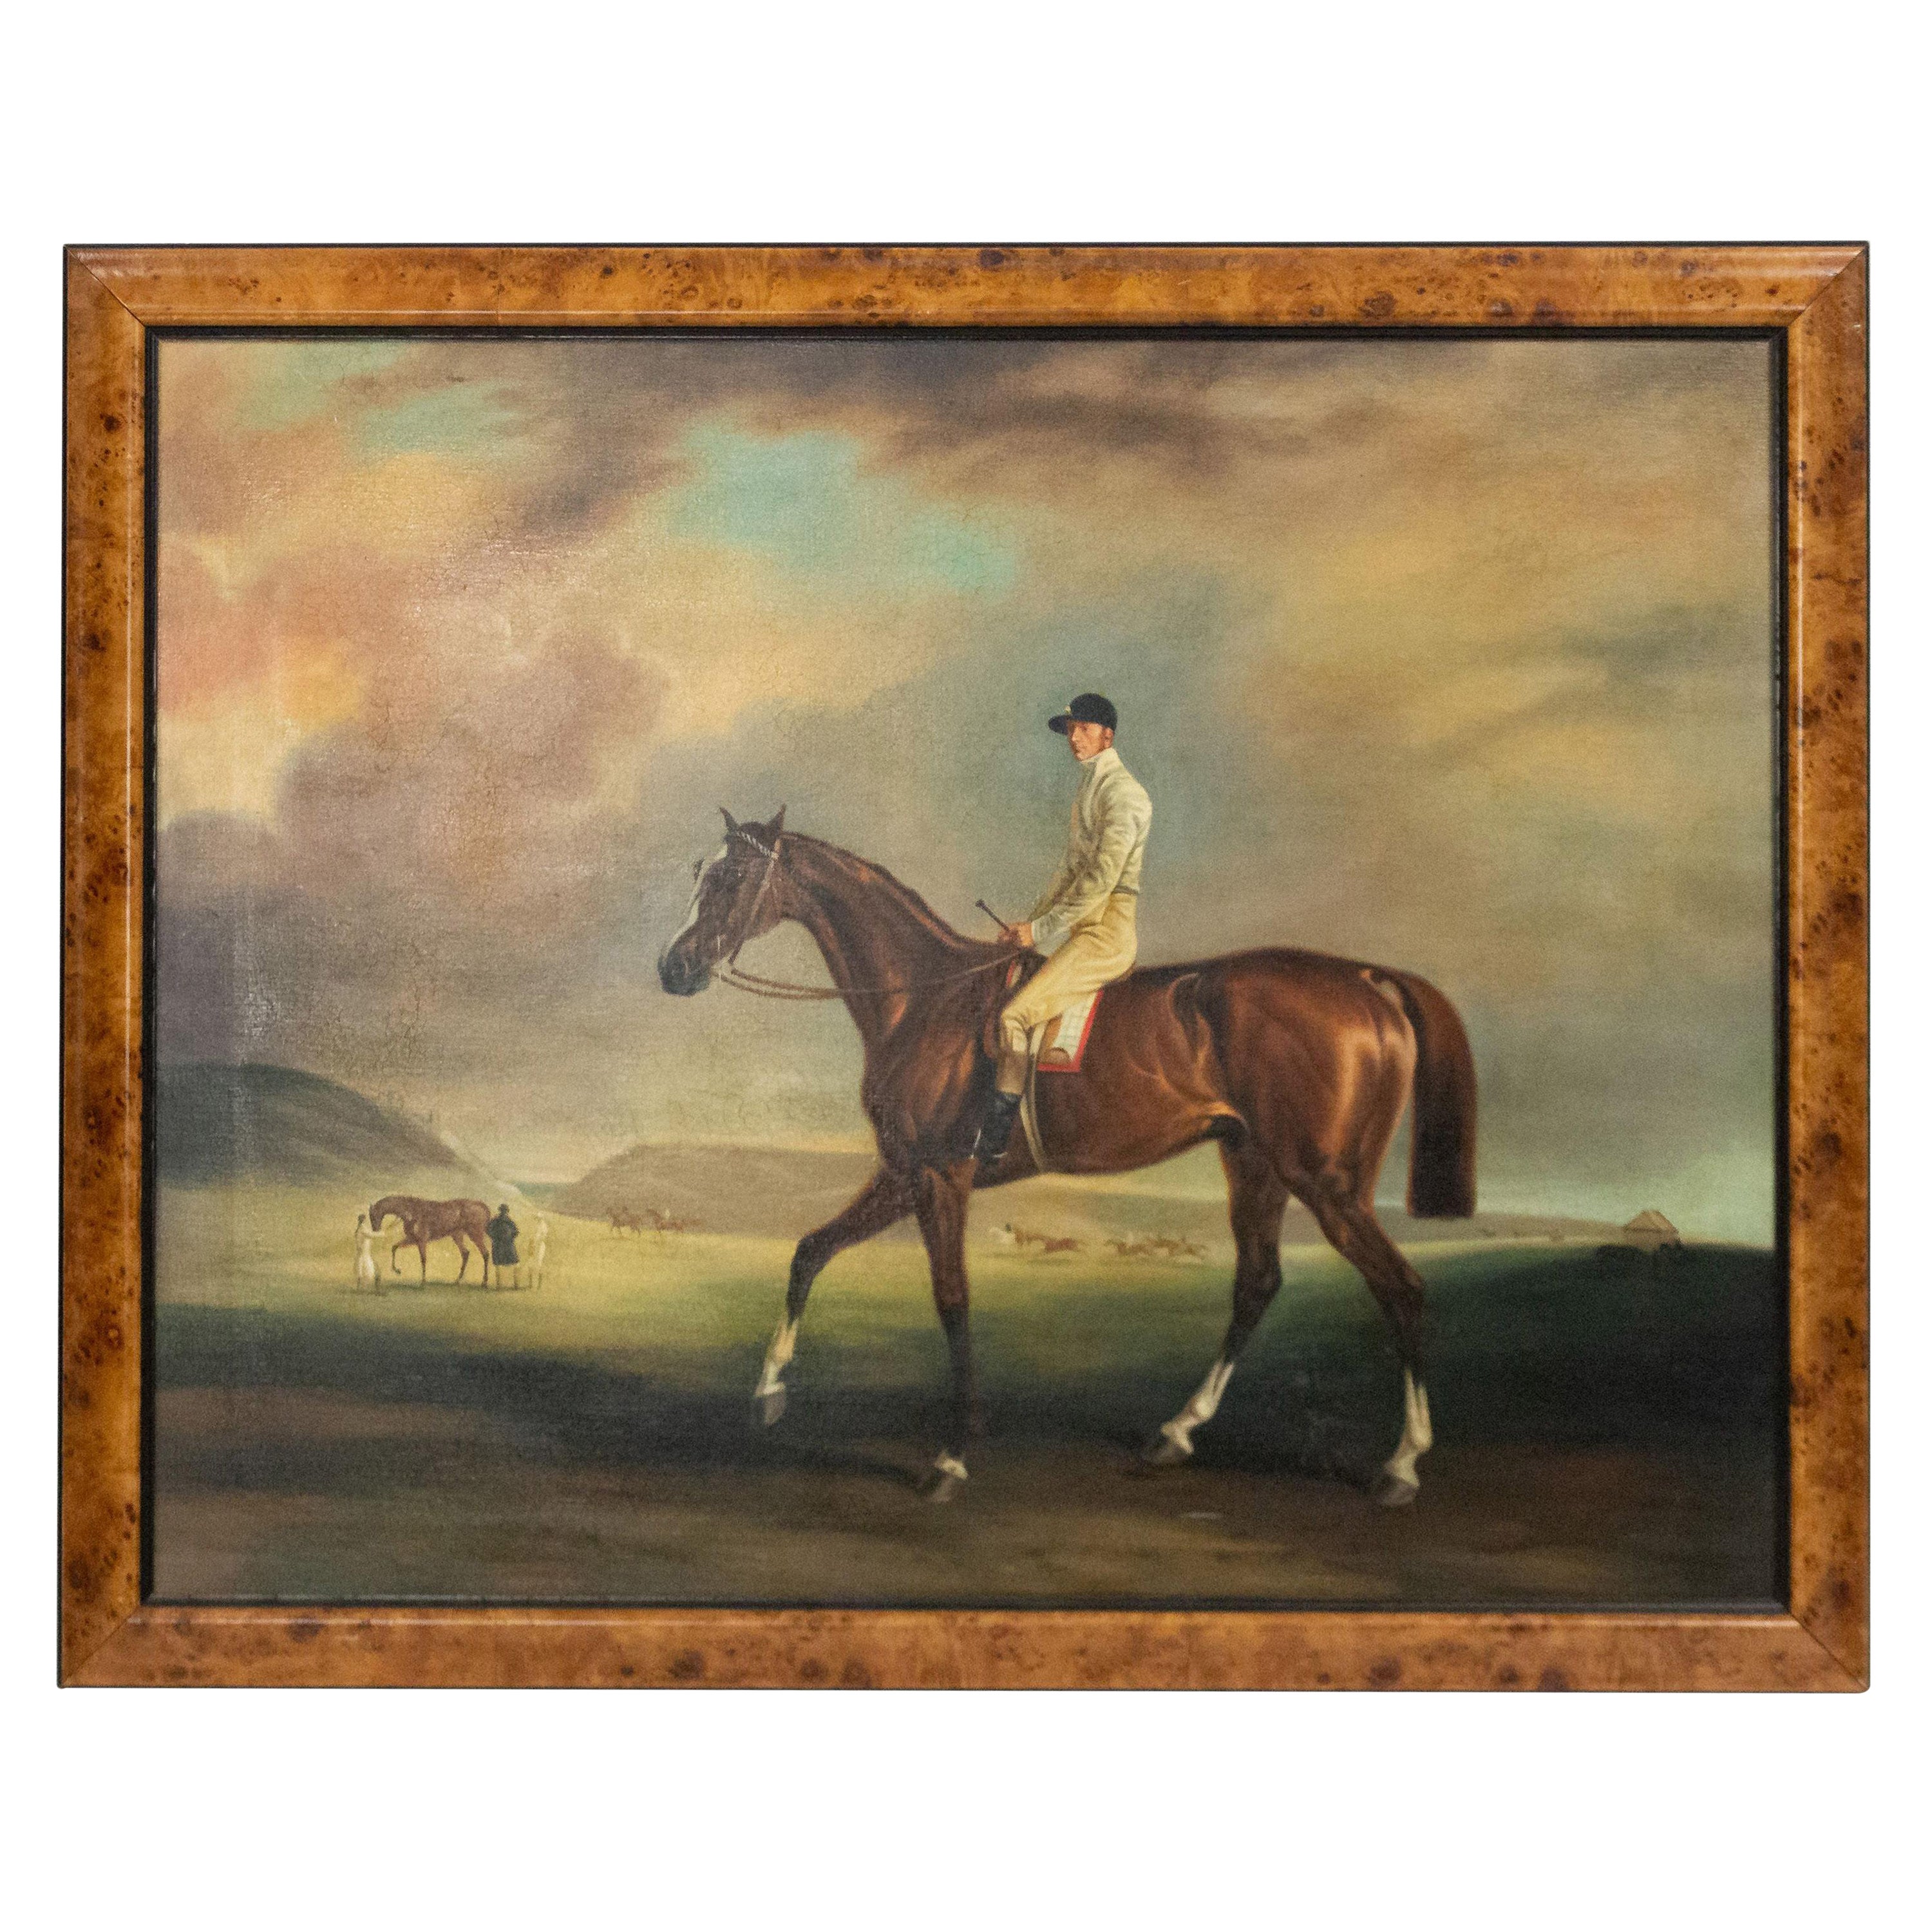 Peinture de Jockey victorienne anglaise du 20ème siècle encadrée